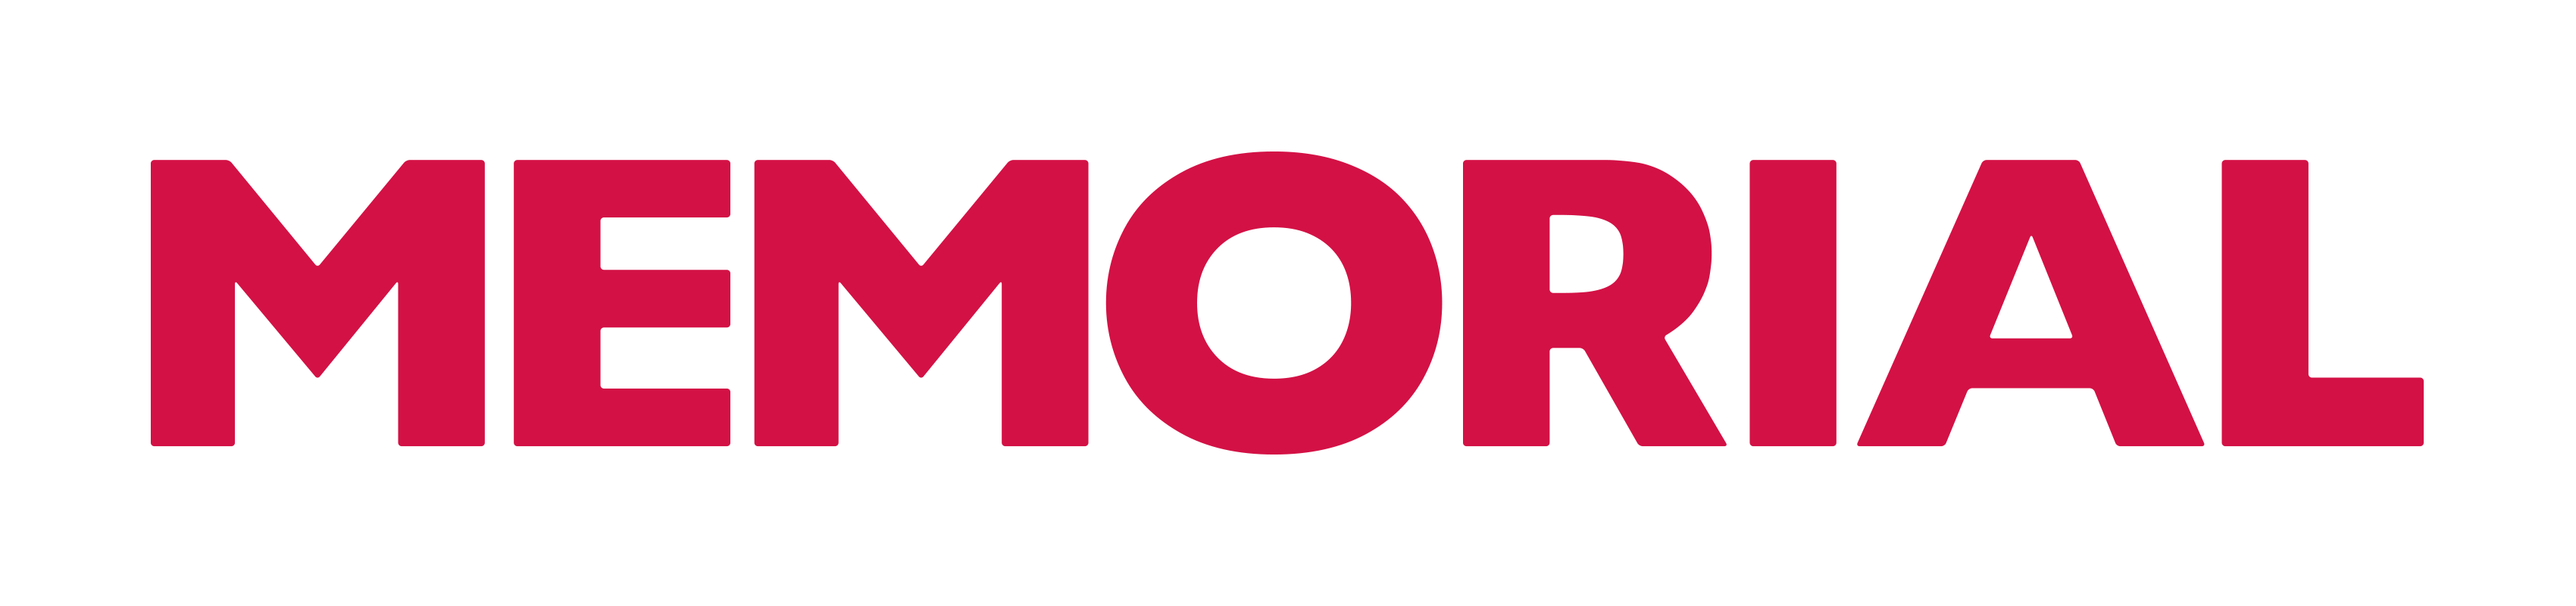 Memorial Logo - Memorial Logo - Logo Vector Online 2019